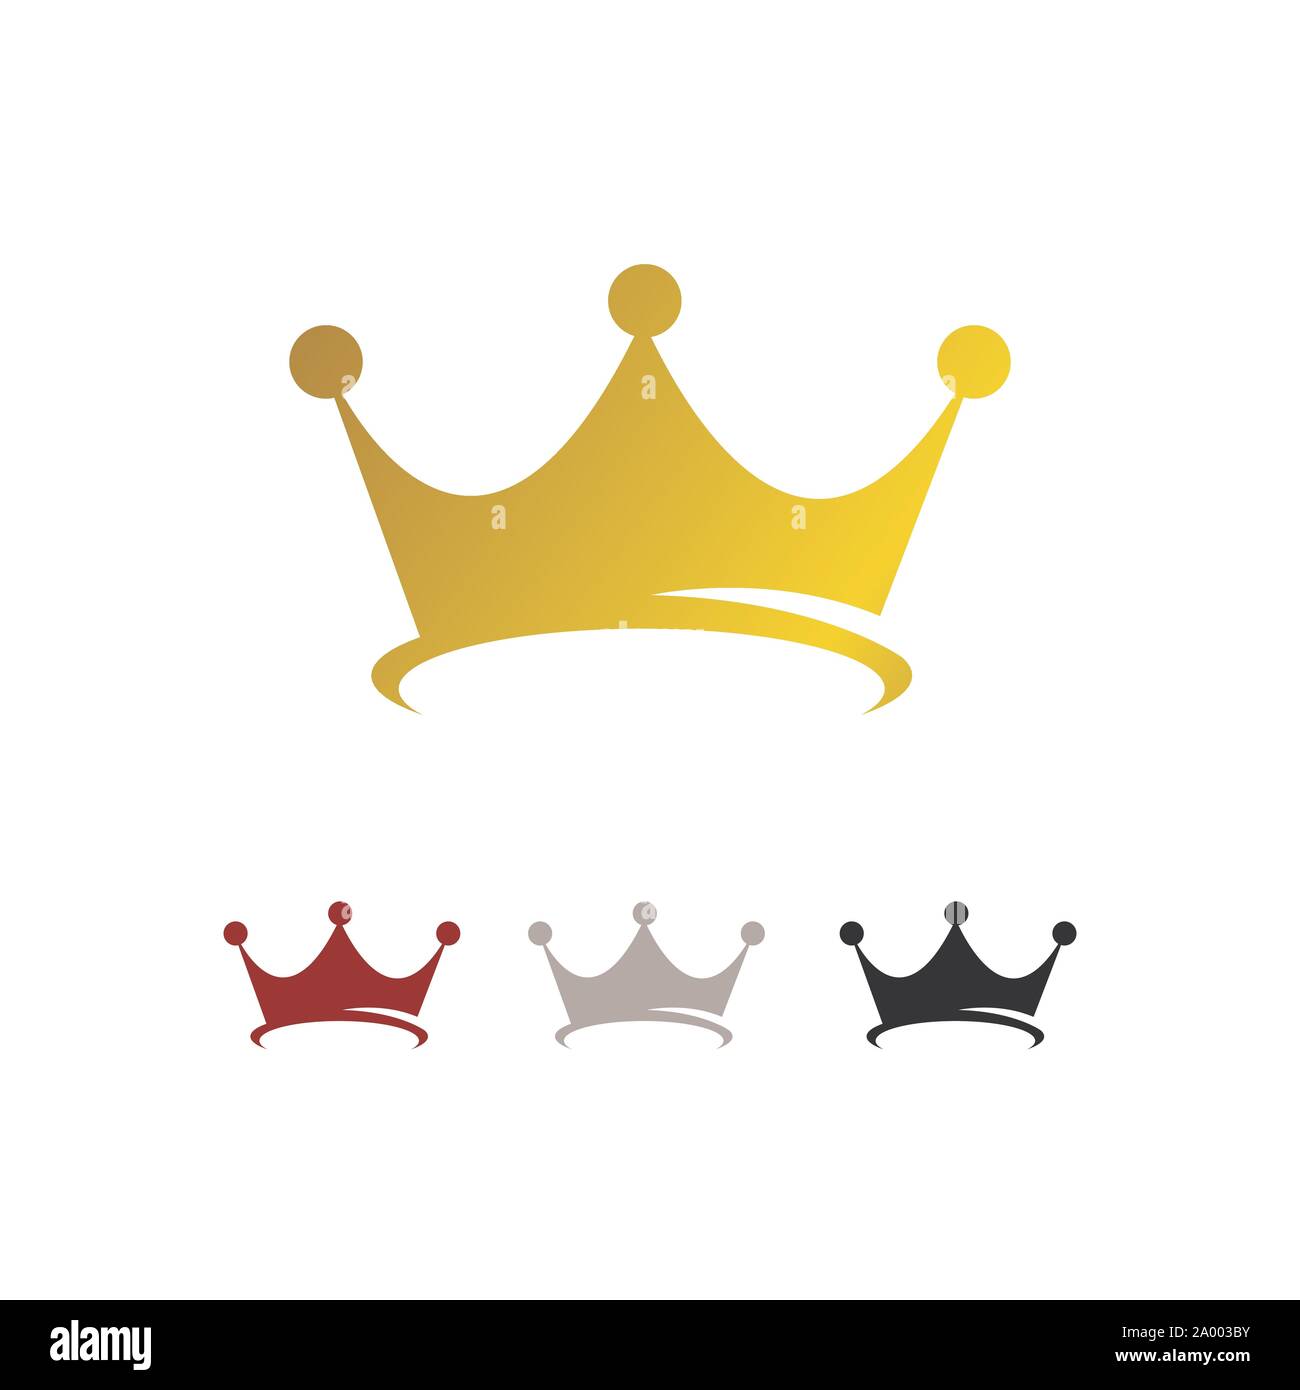 gold luxury Crown Logo Vector Royal King Queen abstract design Stock Vector